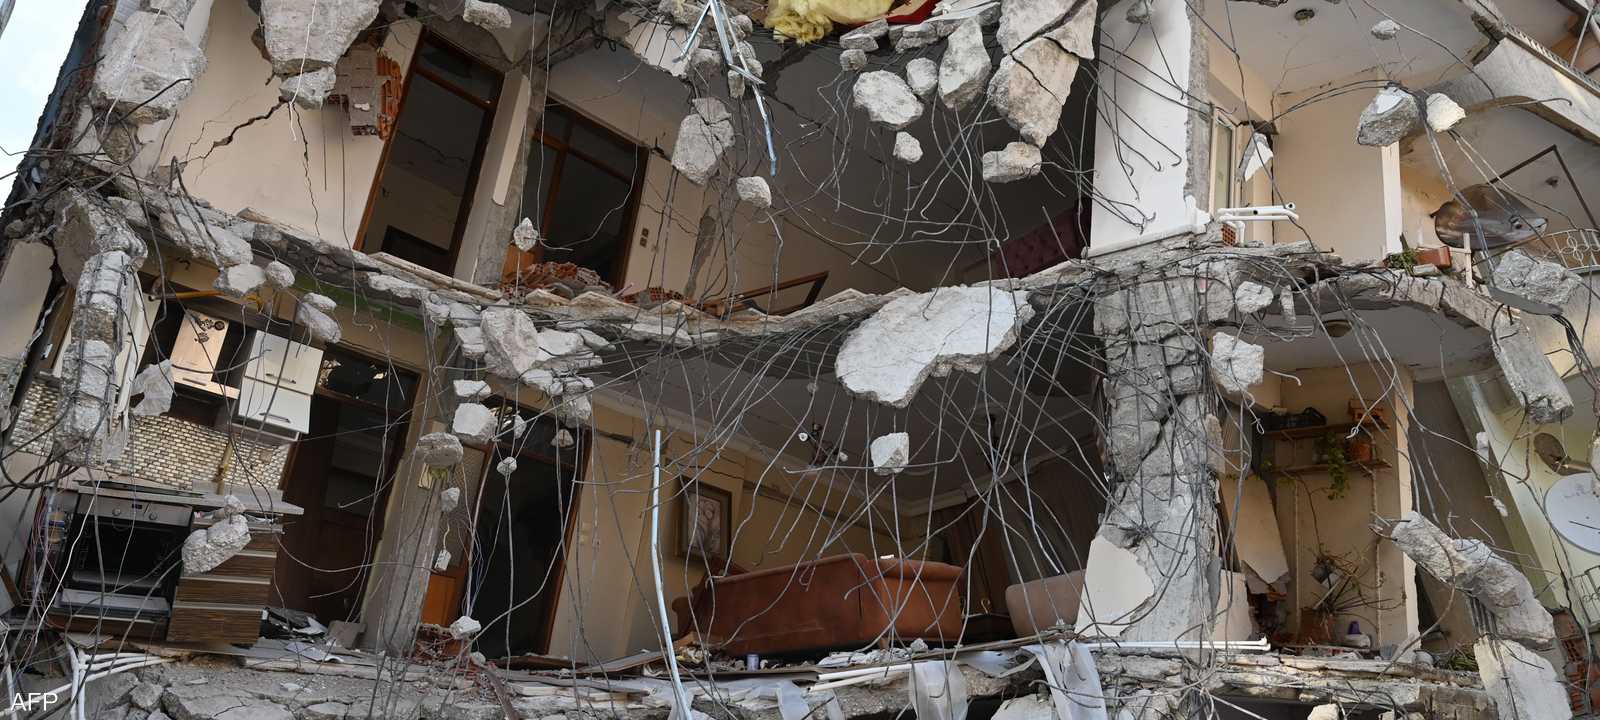 من آثار الزلزال المدمر الذي ضرب هاتاي في تركيا